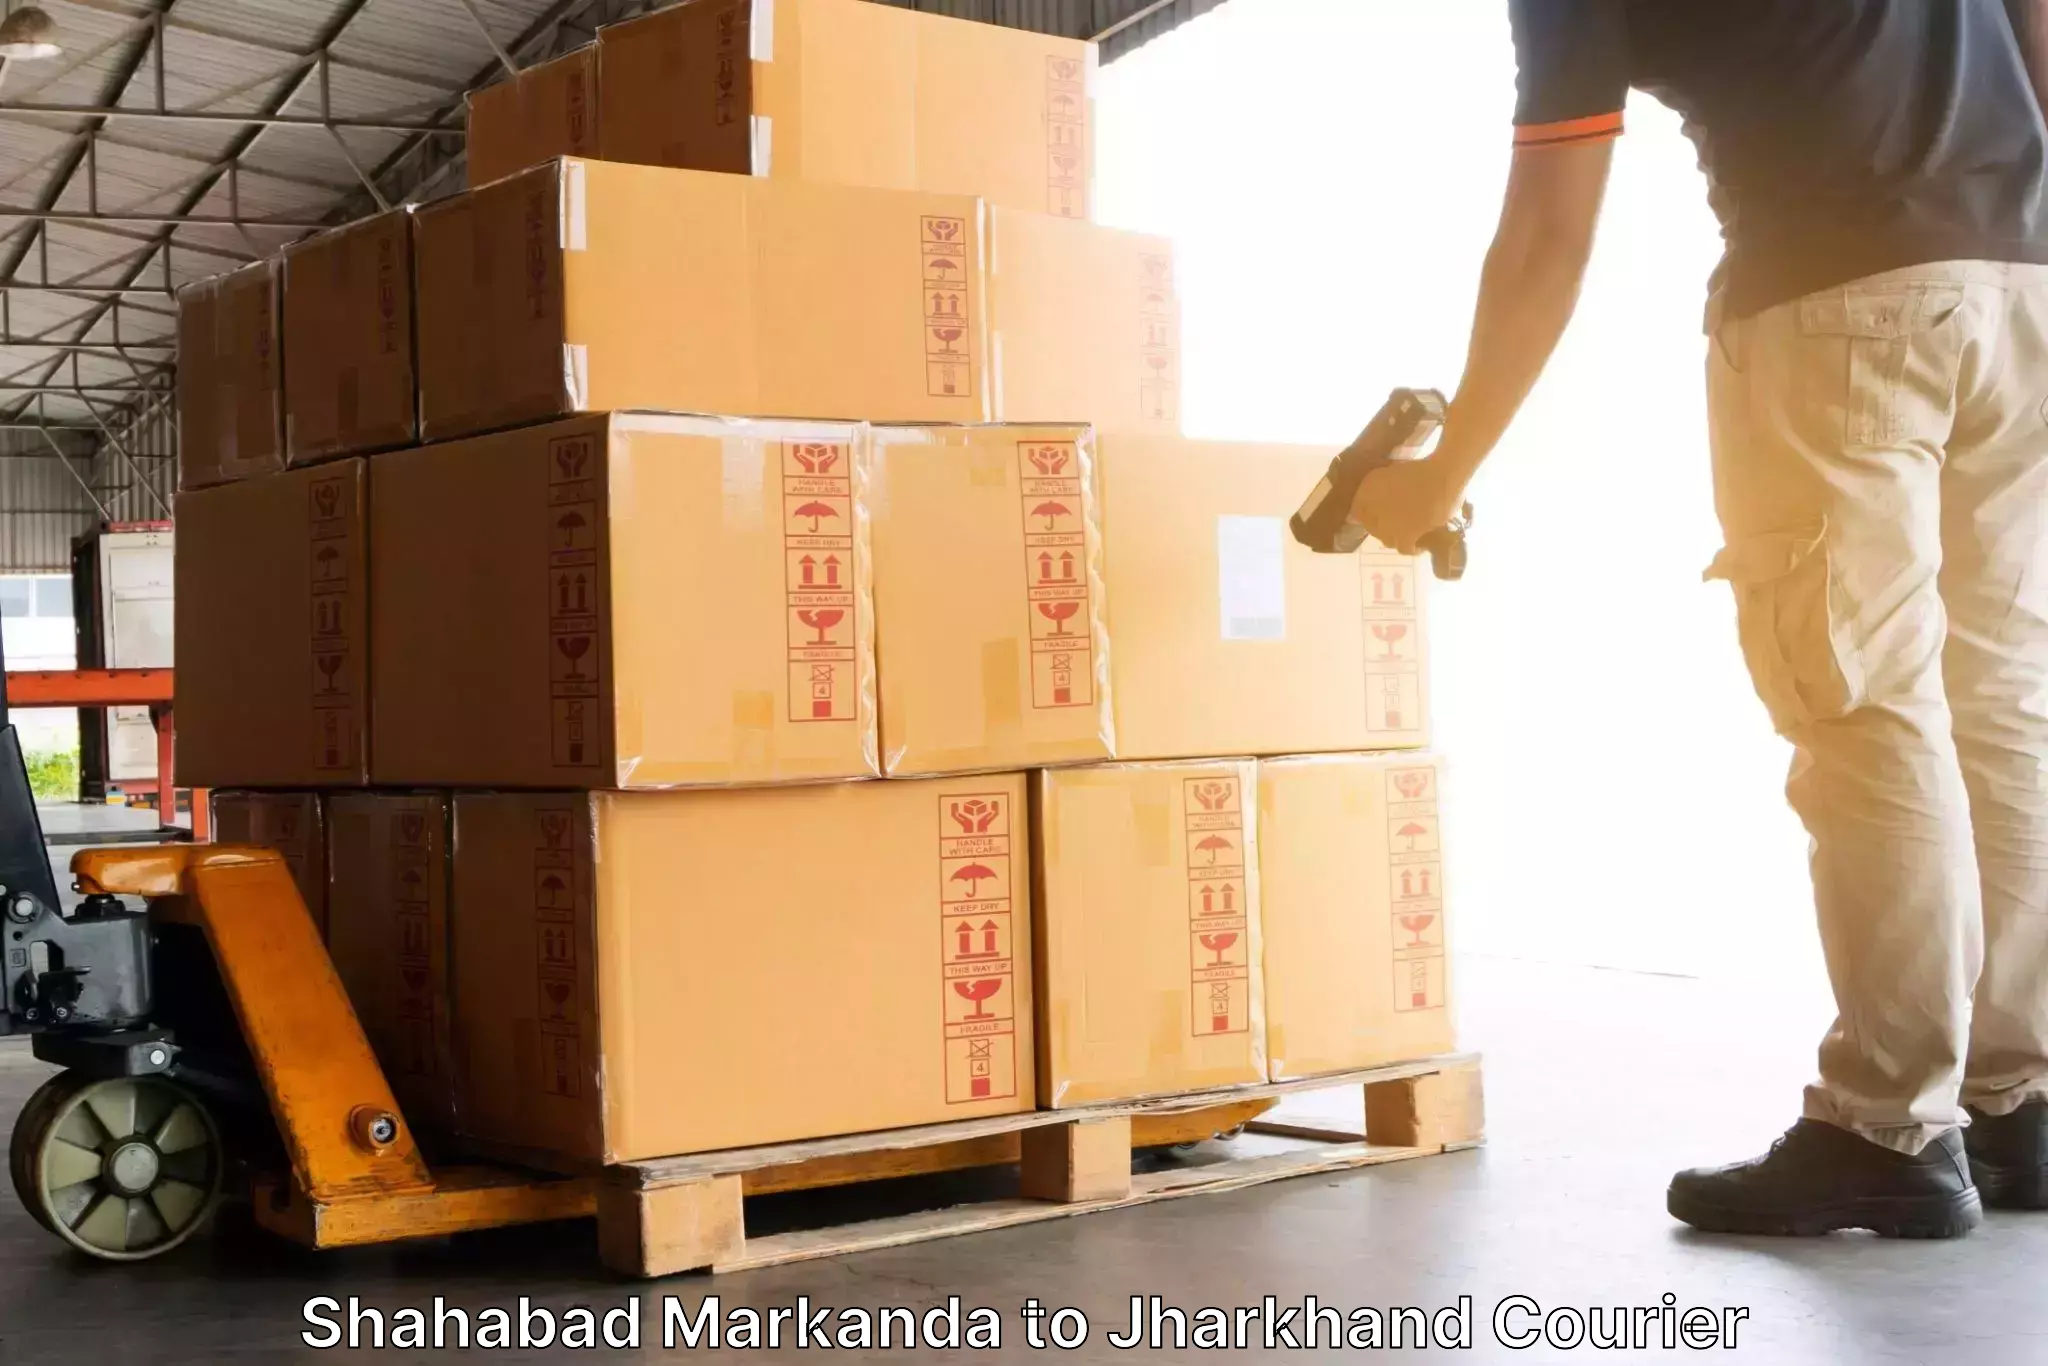 Efficient freight service Shahabad Markanda to Giridih